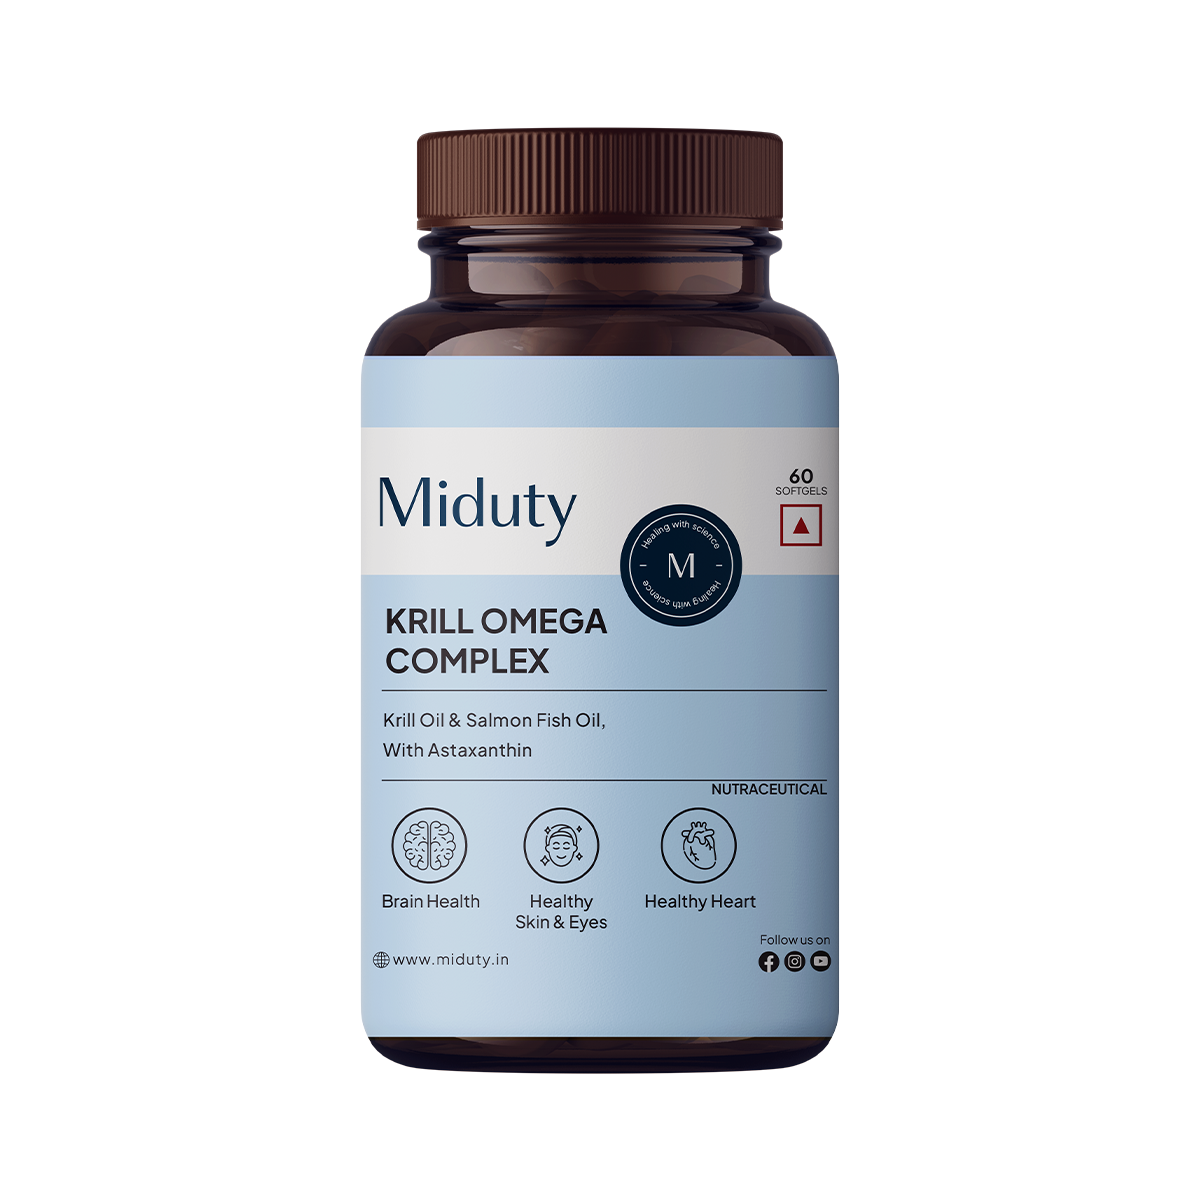 Krill Omega complex - Miduty